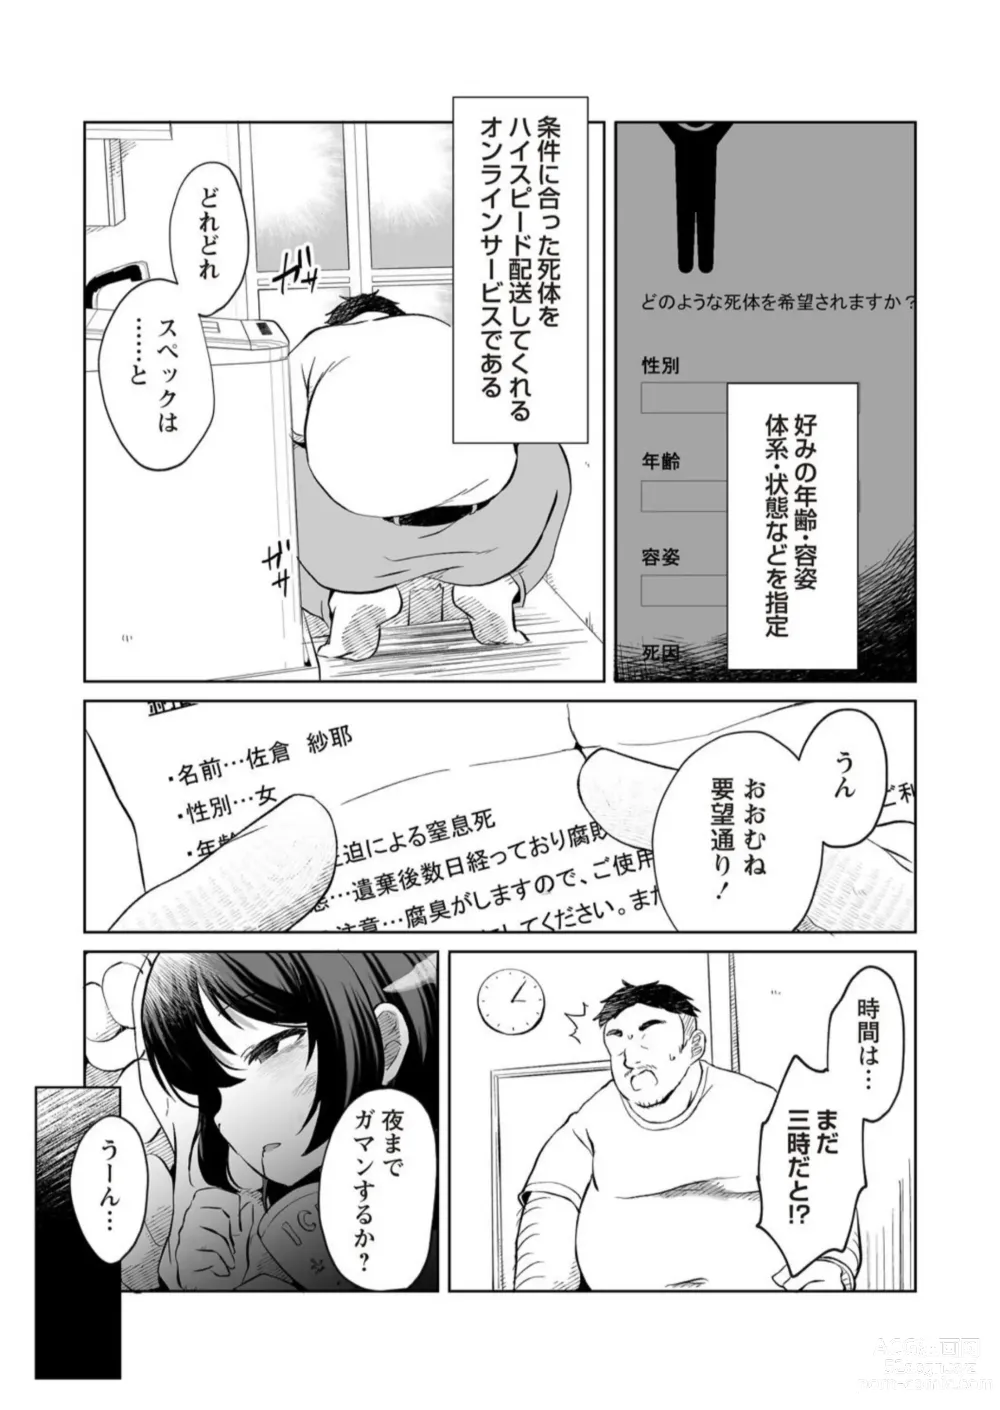 Page 3 of manga Chousoku Haisou! Necro Prime